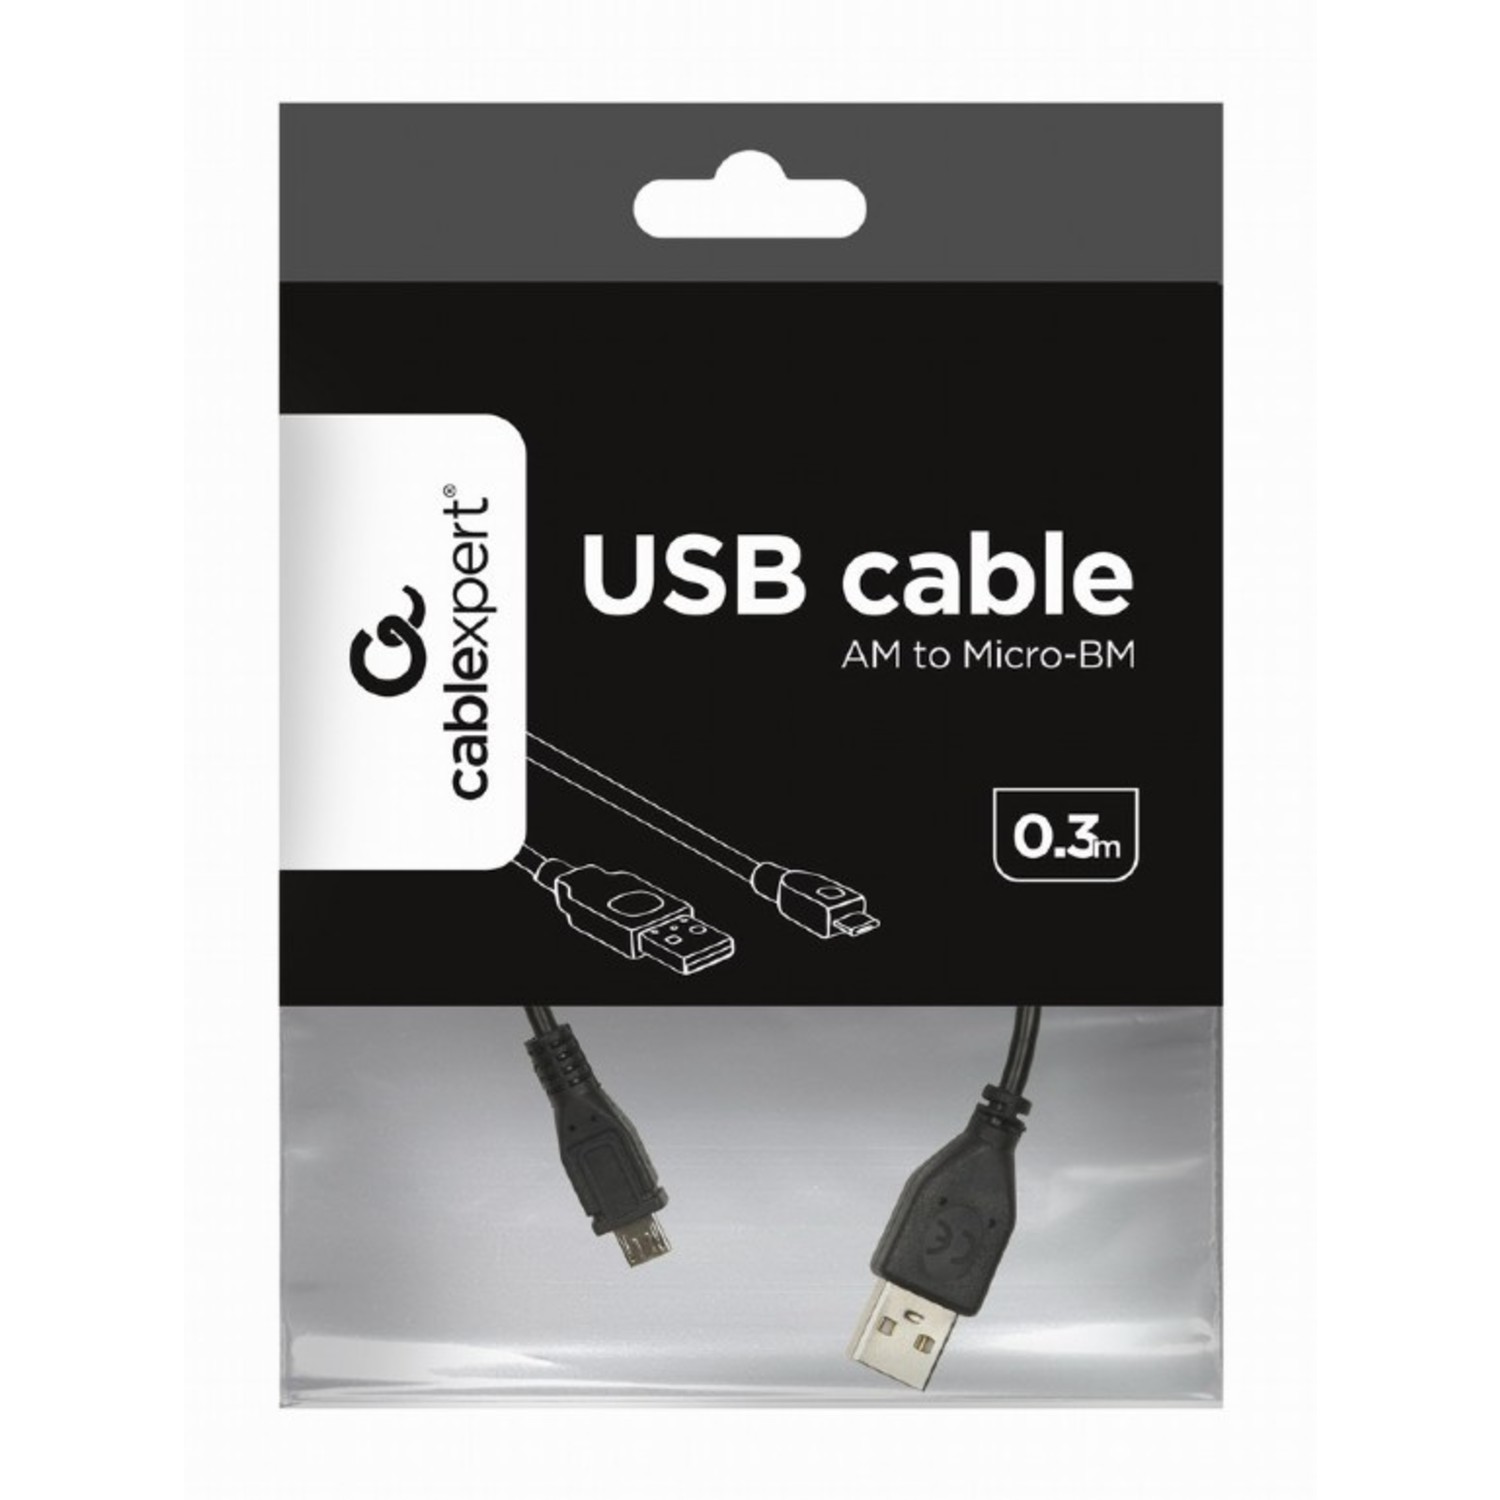 Voorwaarden Bengelen marketing Micro USB kabel - iTronify